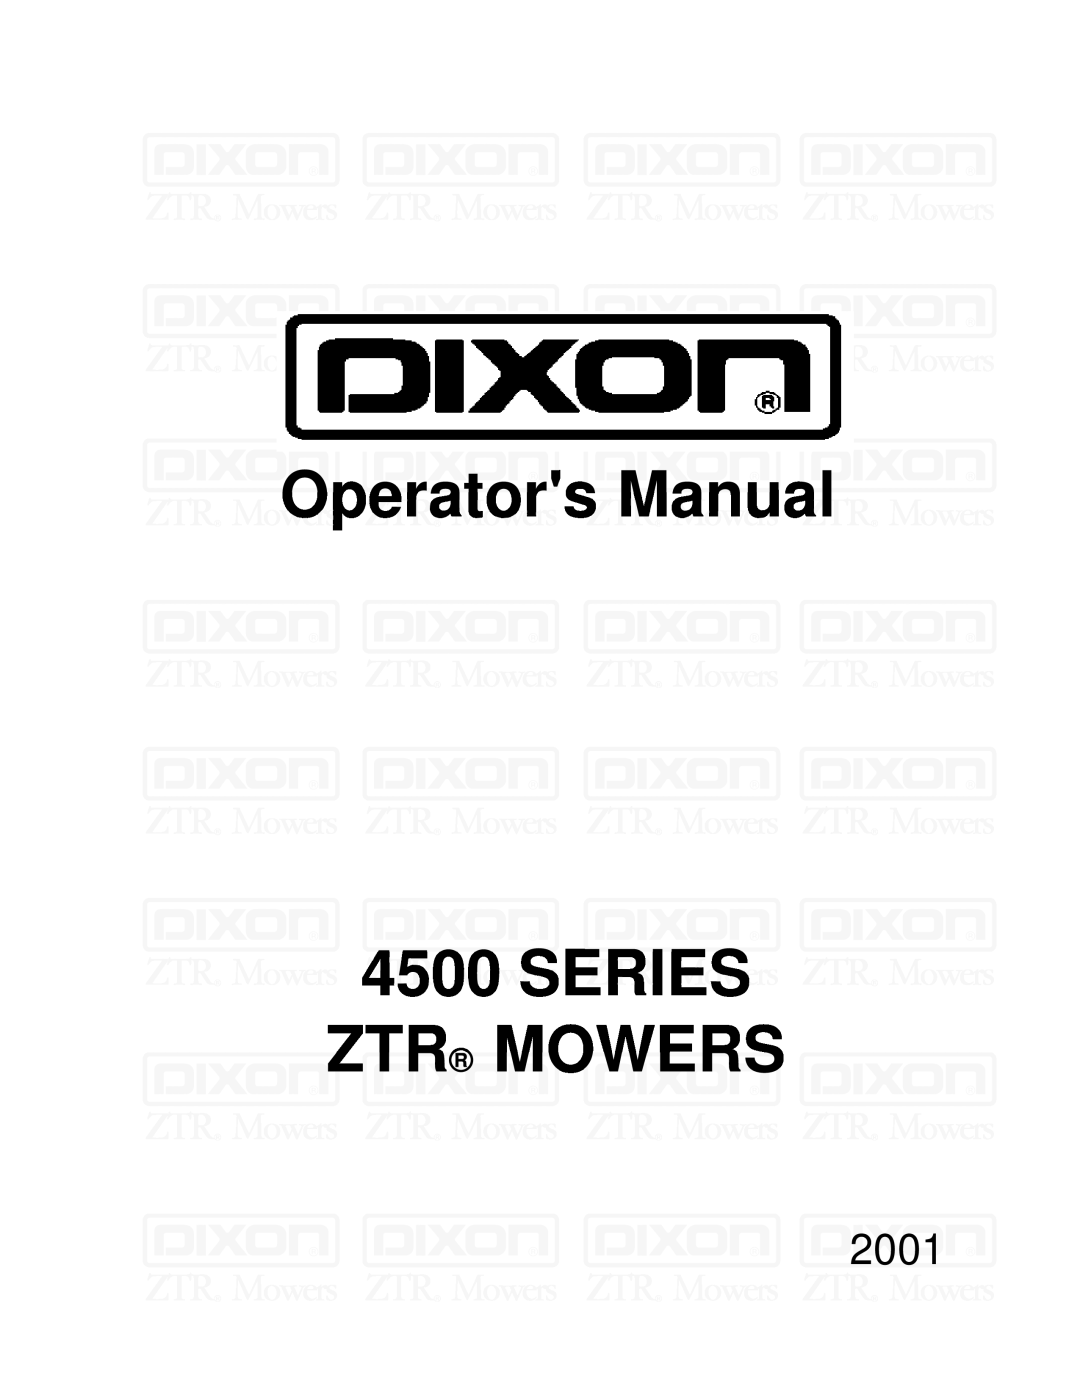 Dixon 13088-1100A manual OperatorsManual 4500SERIES ZTR MOWERS, 2001 